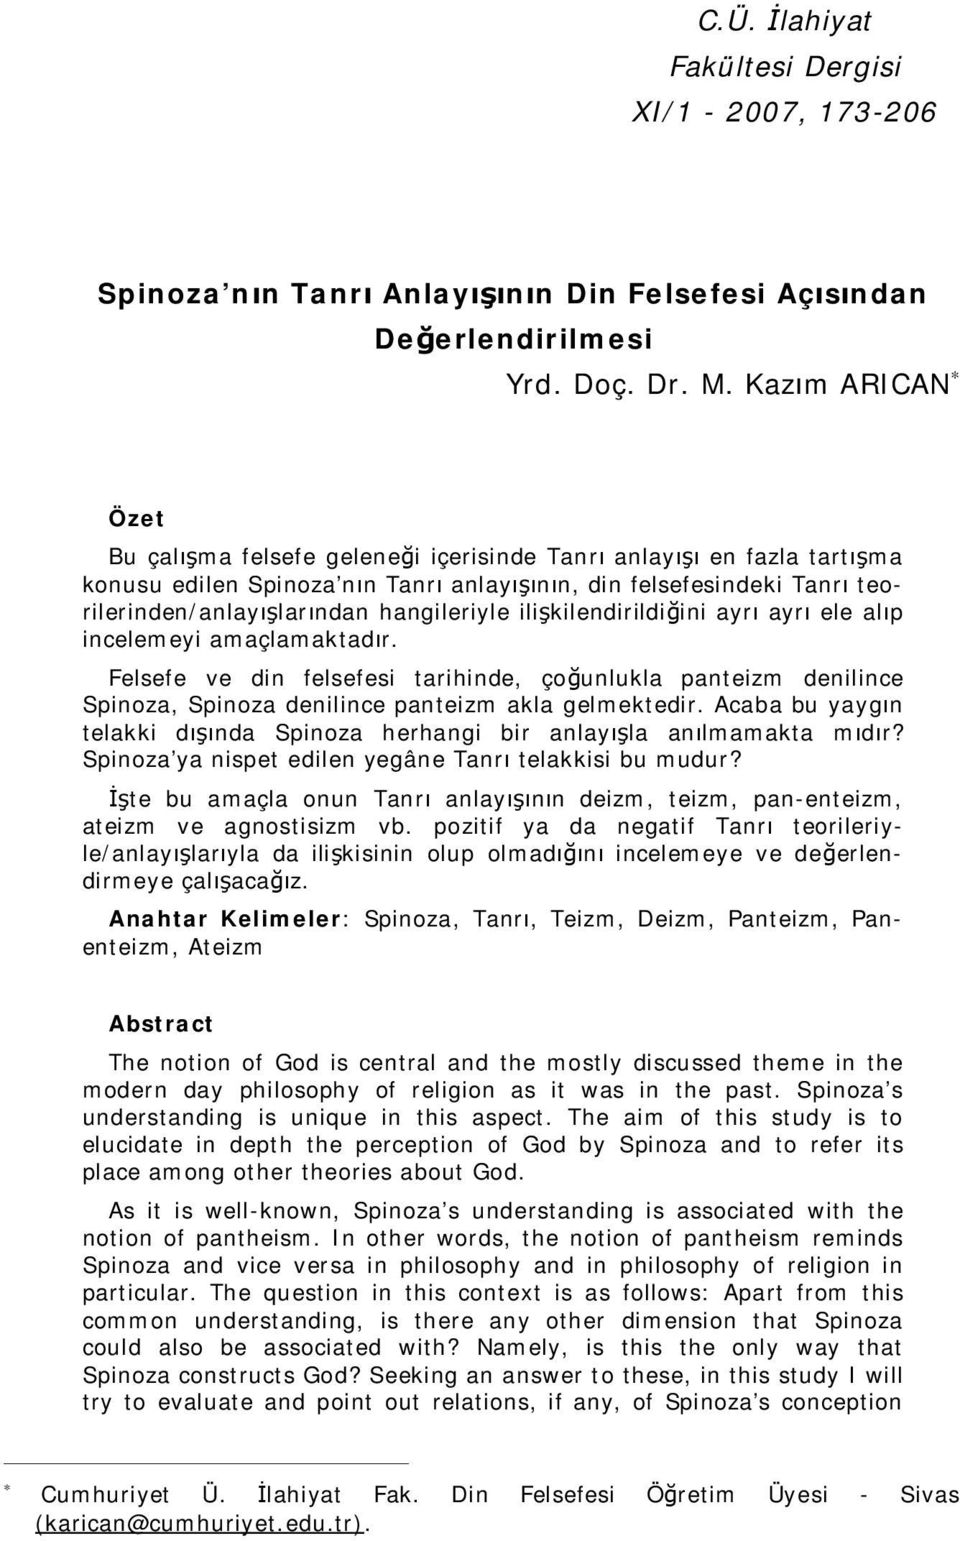 spinoza nin tanri anlayisinin din felsefesi acisindan degerlendirilmesi yrd doc dr m kazim arican pdf ucretsiz indirin